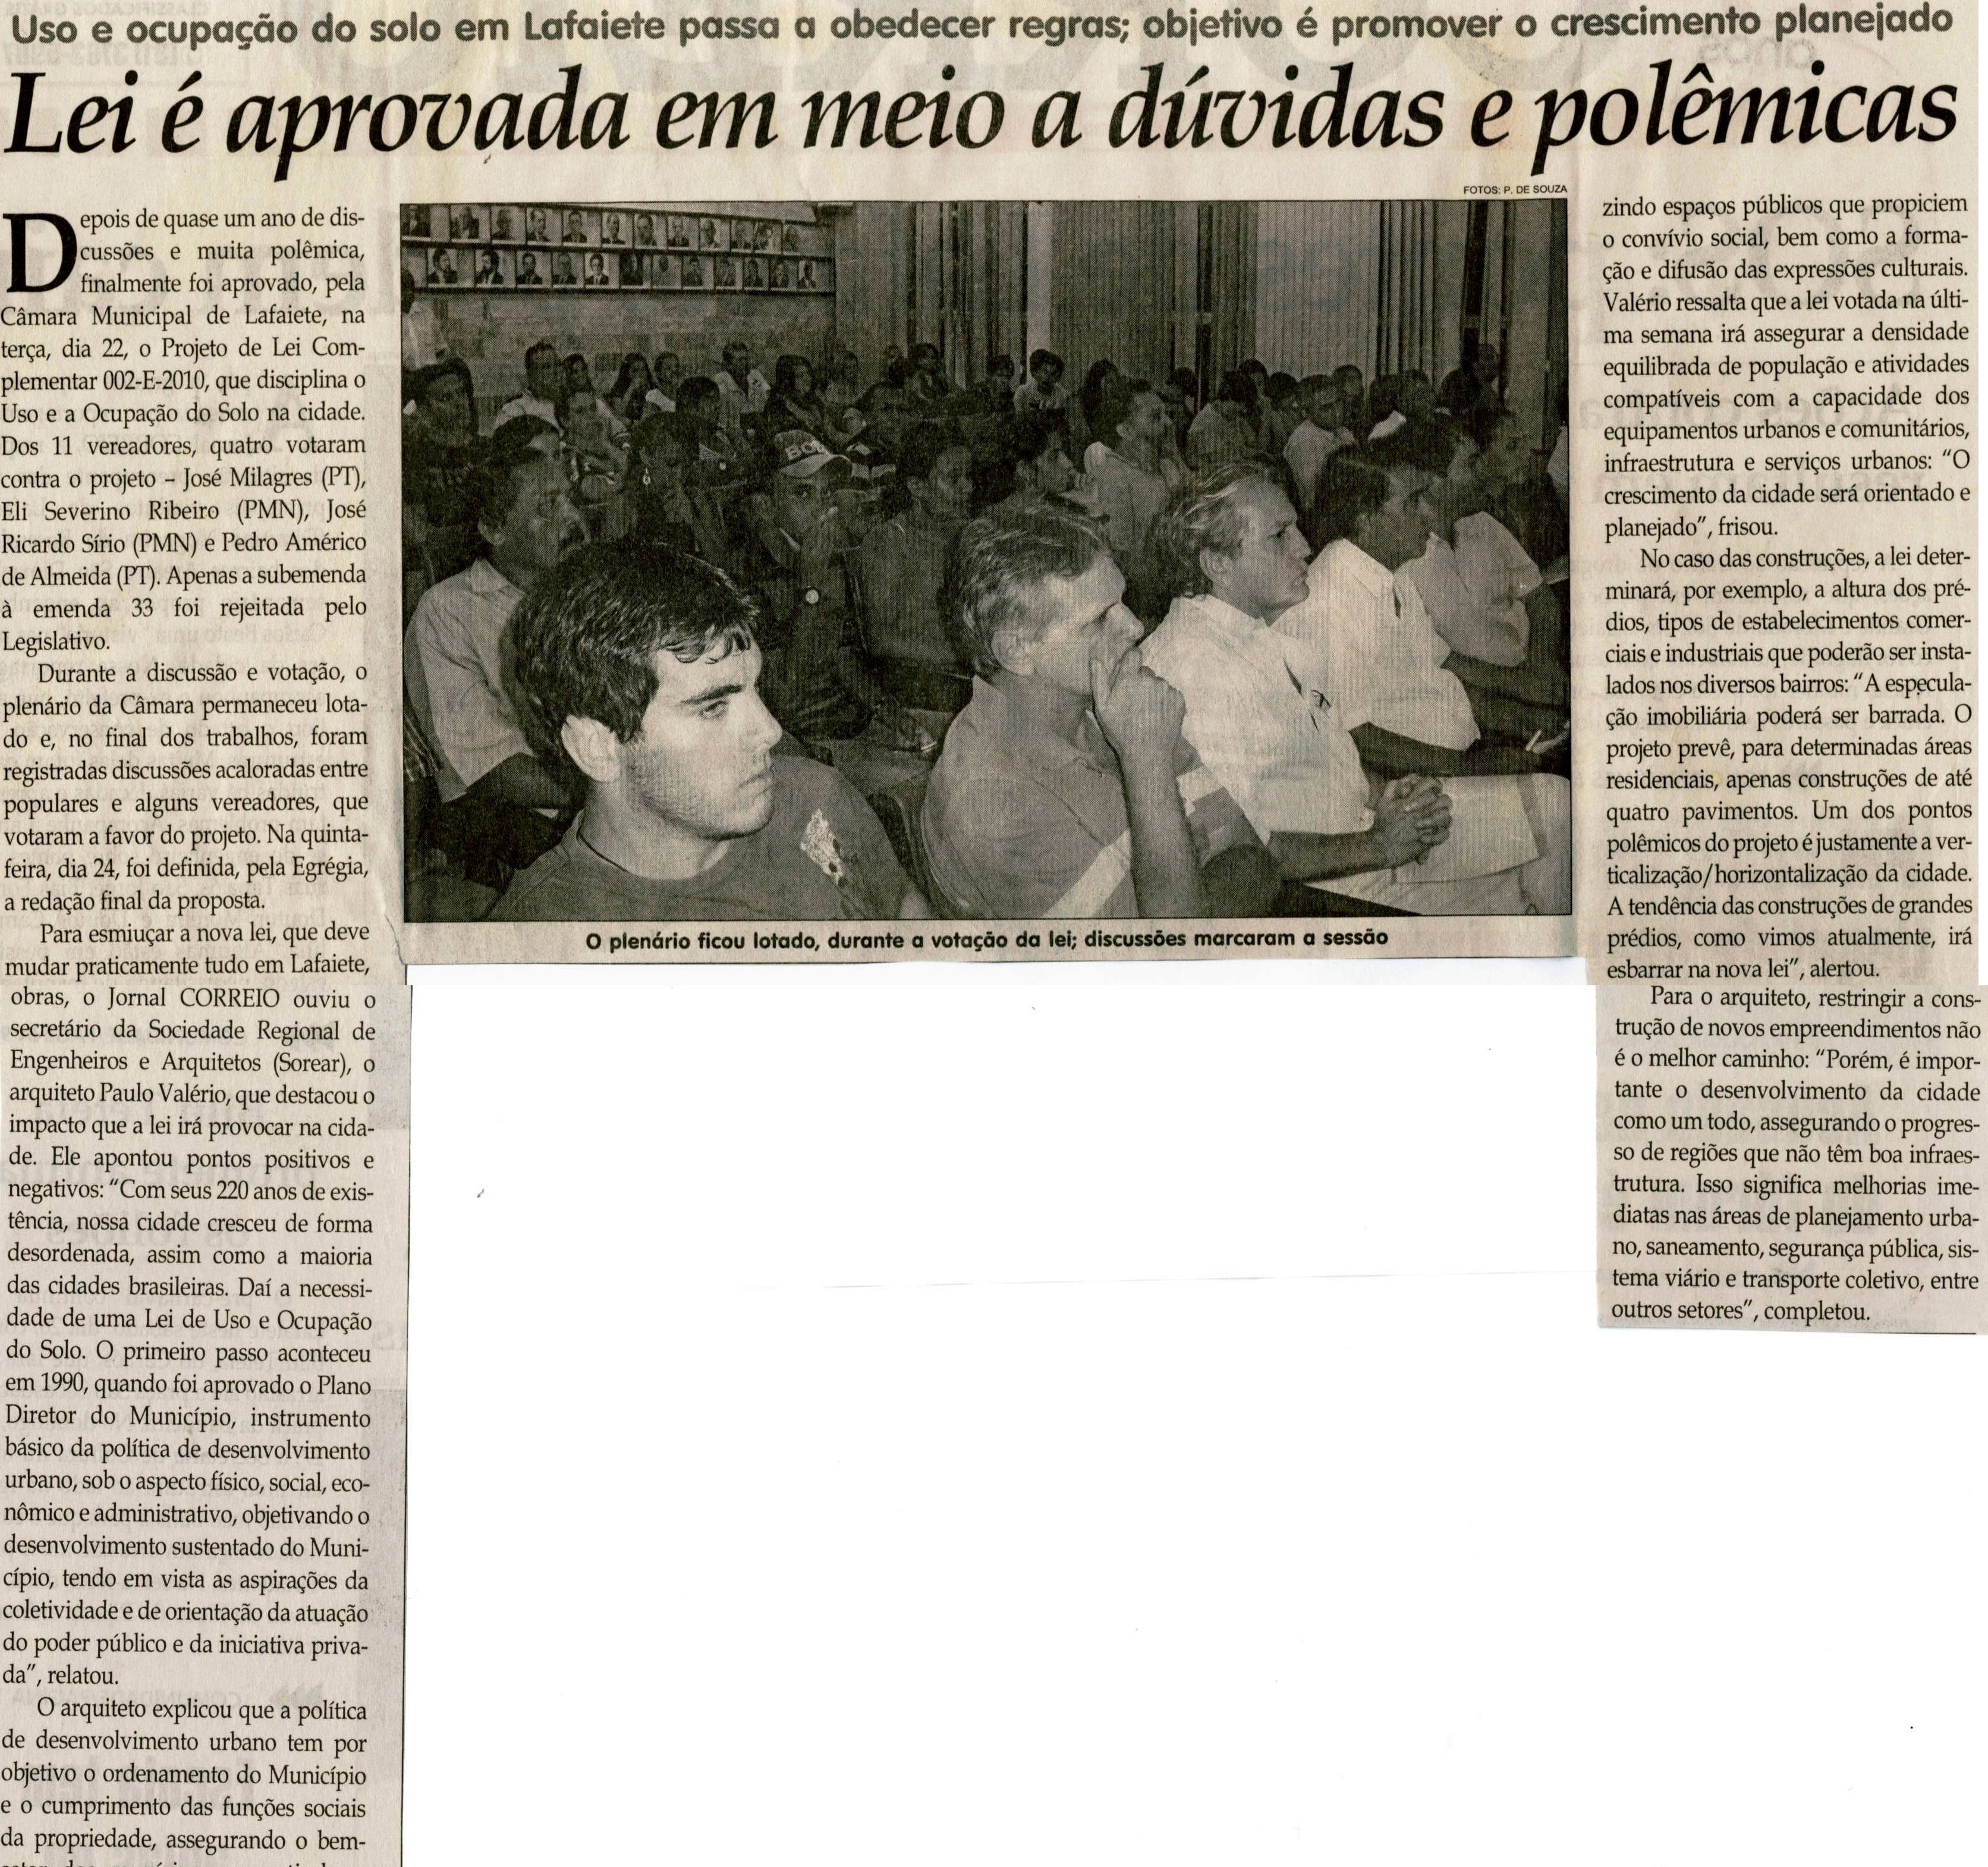 Lei é aprovada em meio a dúvidas e polêmicas. Jornal Correio da Cidade, Conselheiro Lafaiete,  26 fev. 2011, p. 02.